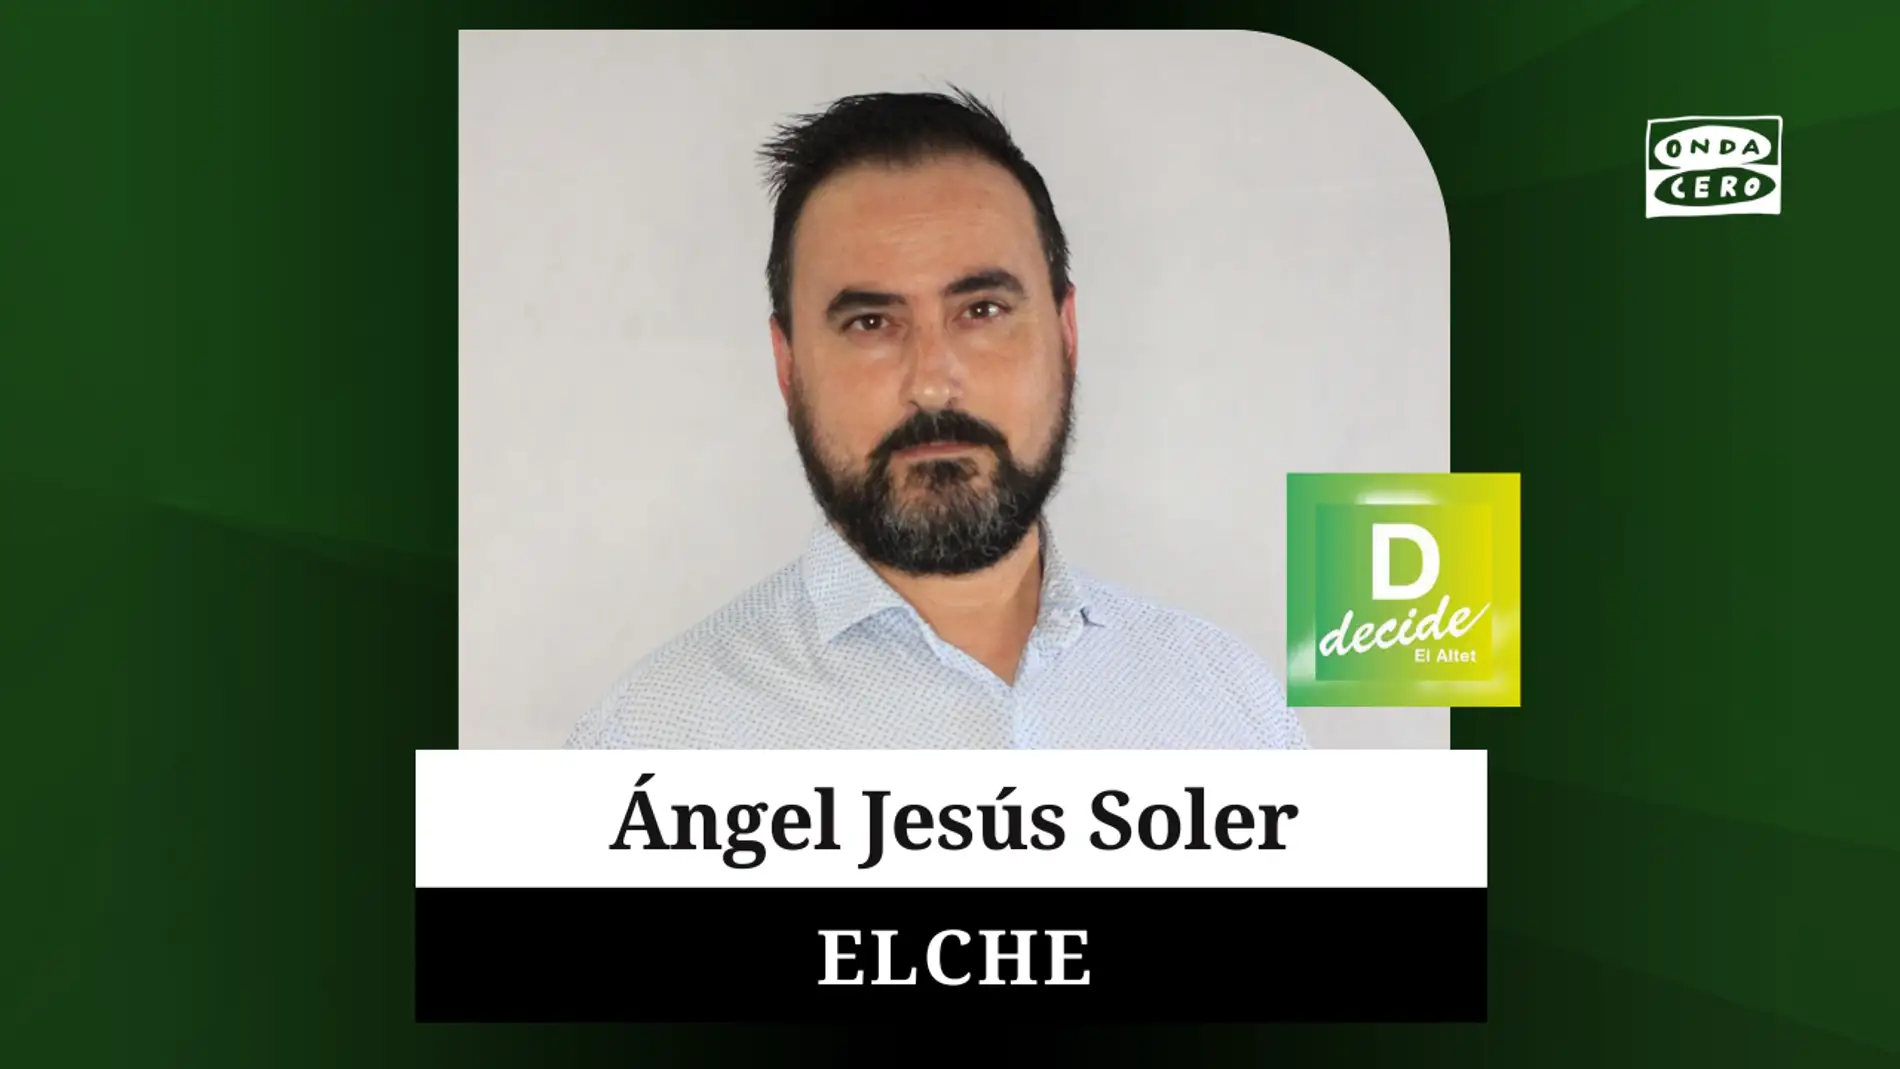 Ángel Jesús Soler, candidato de El Altet Decide a la Alcaldía de Elche.